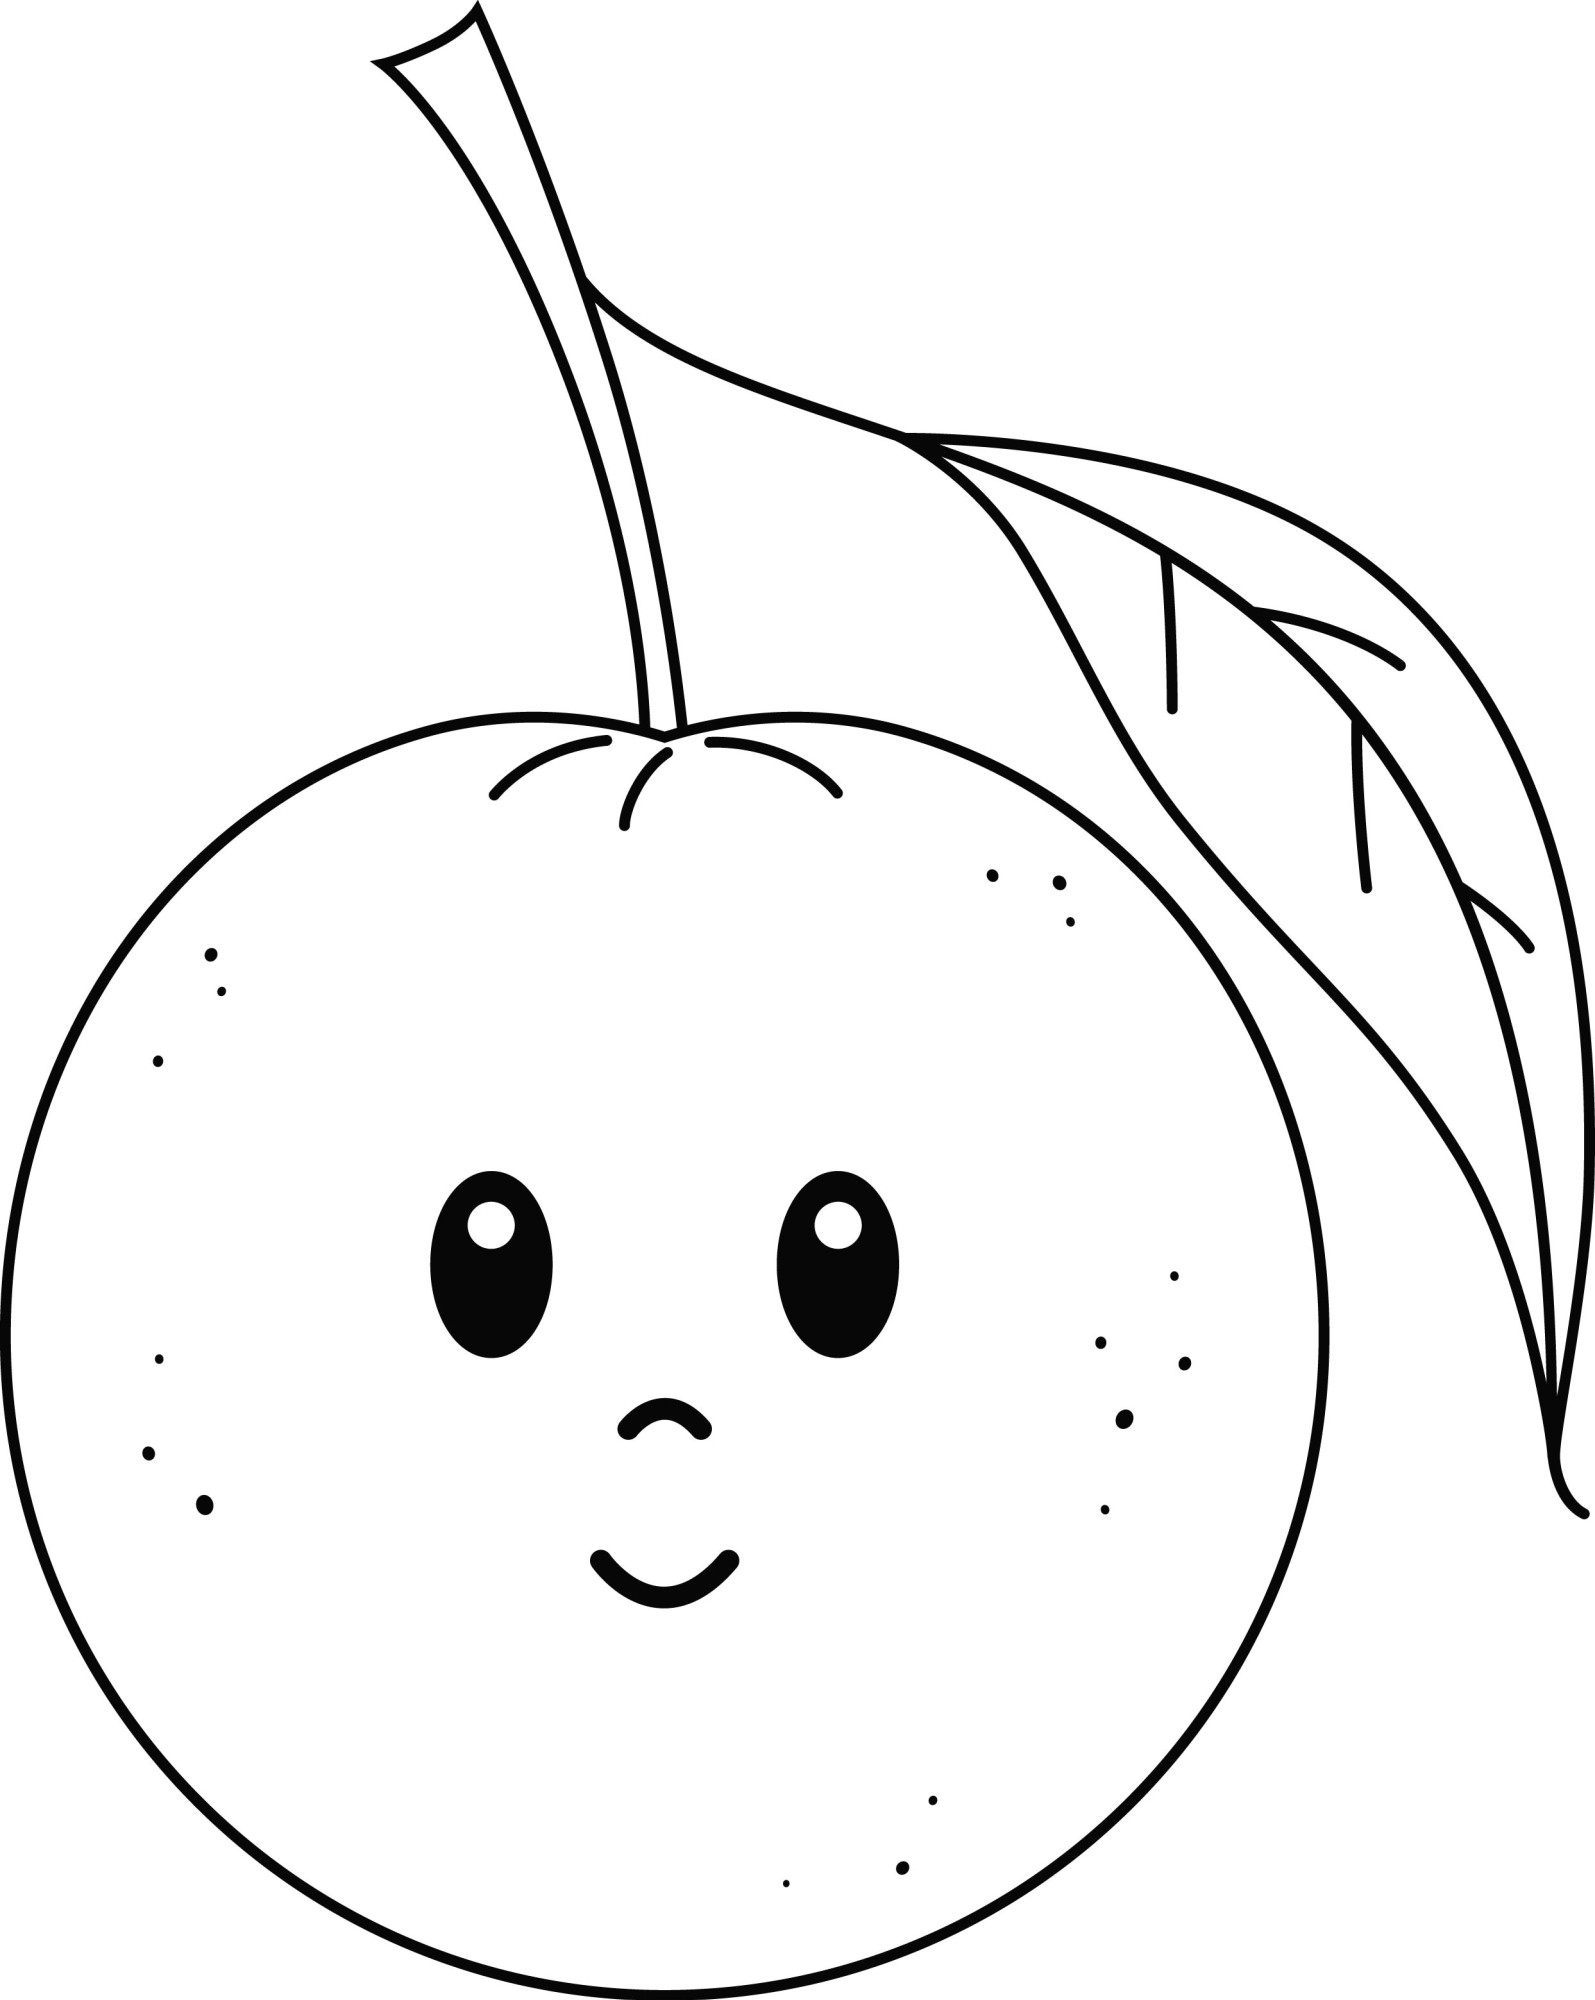 Раскраска для детей: мультяшный апельсин с глазами и листиком